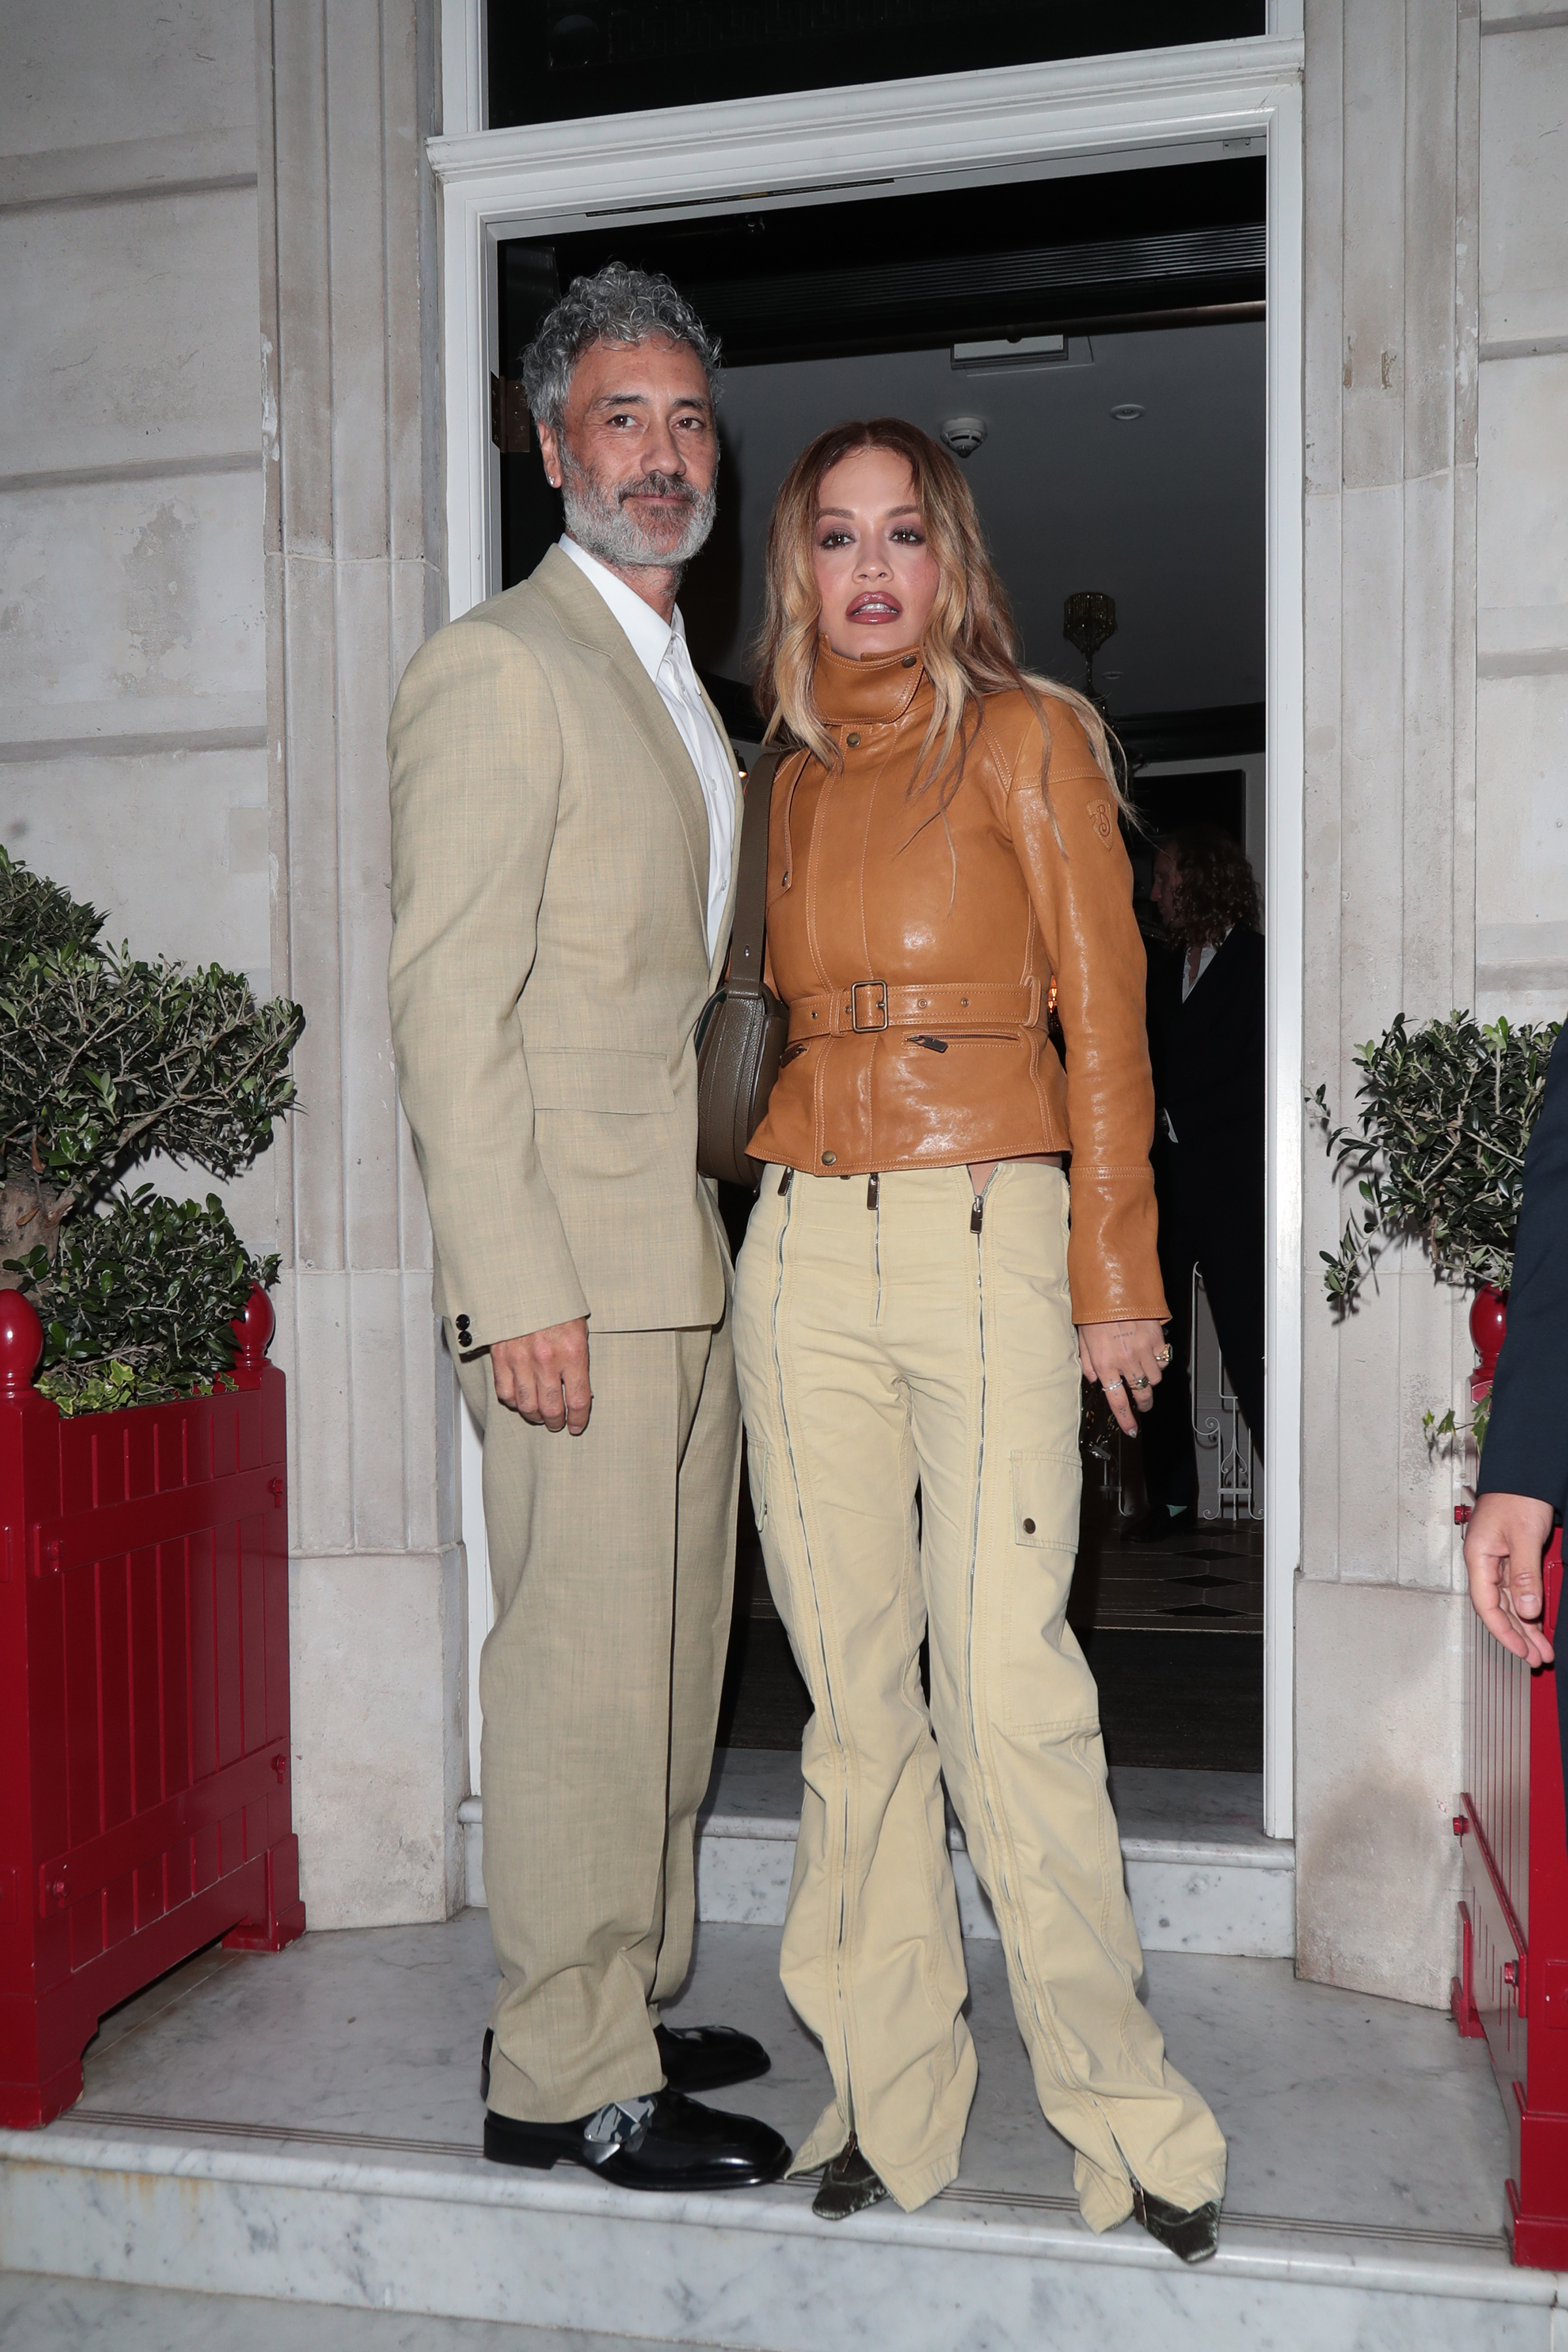 Rita Ora and Taika Waititi attended Maria Sharapova's Wimbledon party in London